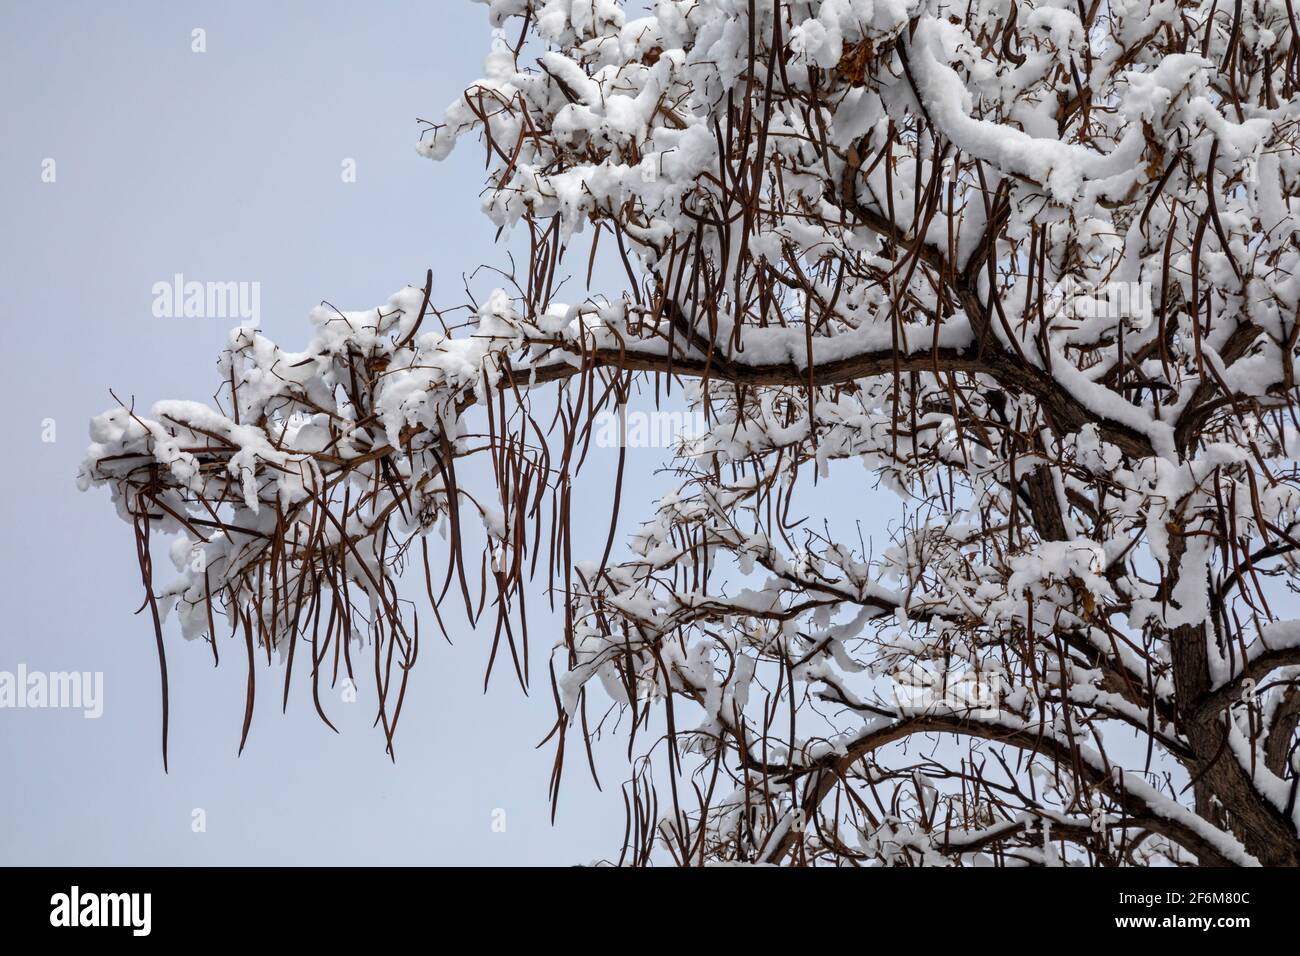 Wheat Ridge, Colorado - die langen Bohnenschoten auf einem Katalpa-Baum nach einem Winterschnee. Stockfoto